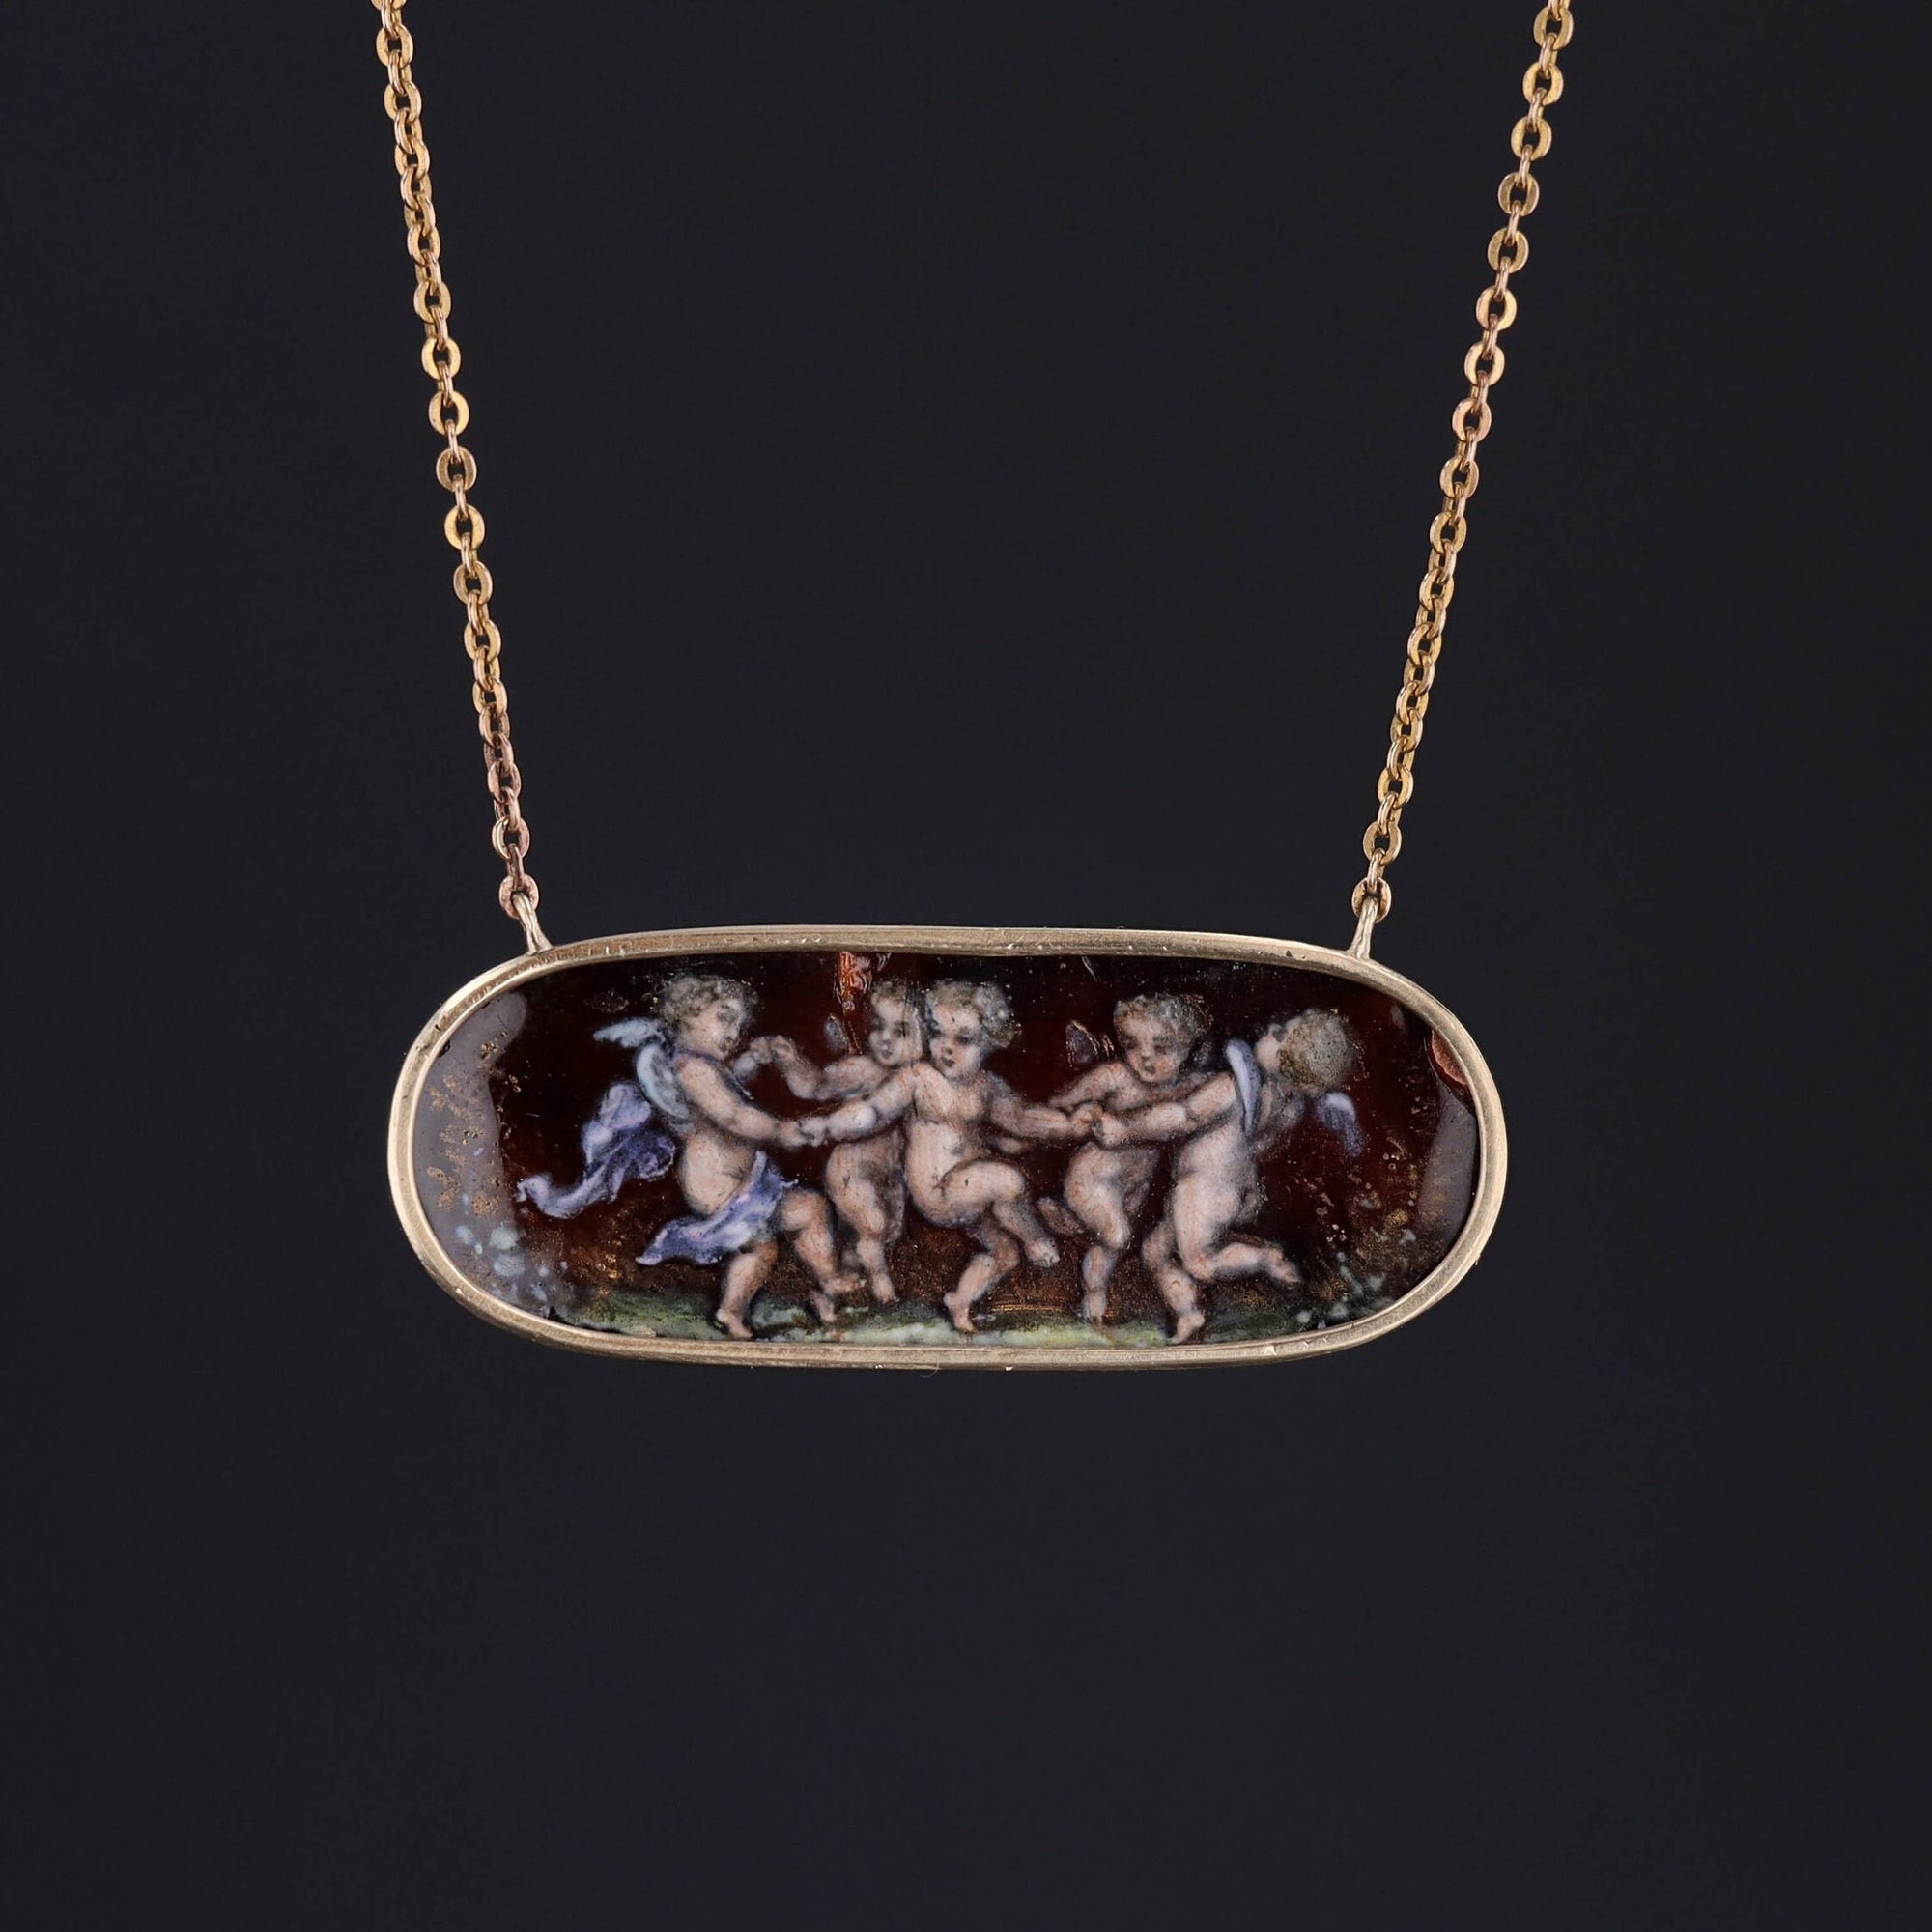 Antique Enamel Cherub Conversion Necklace of 14k Gold